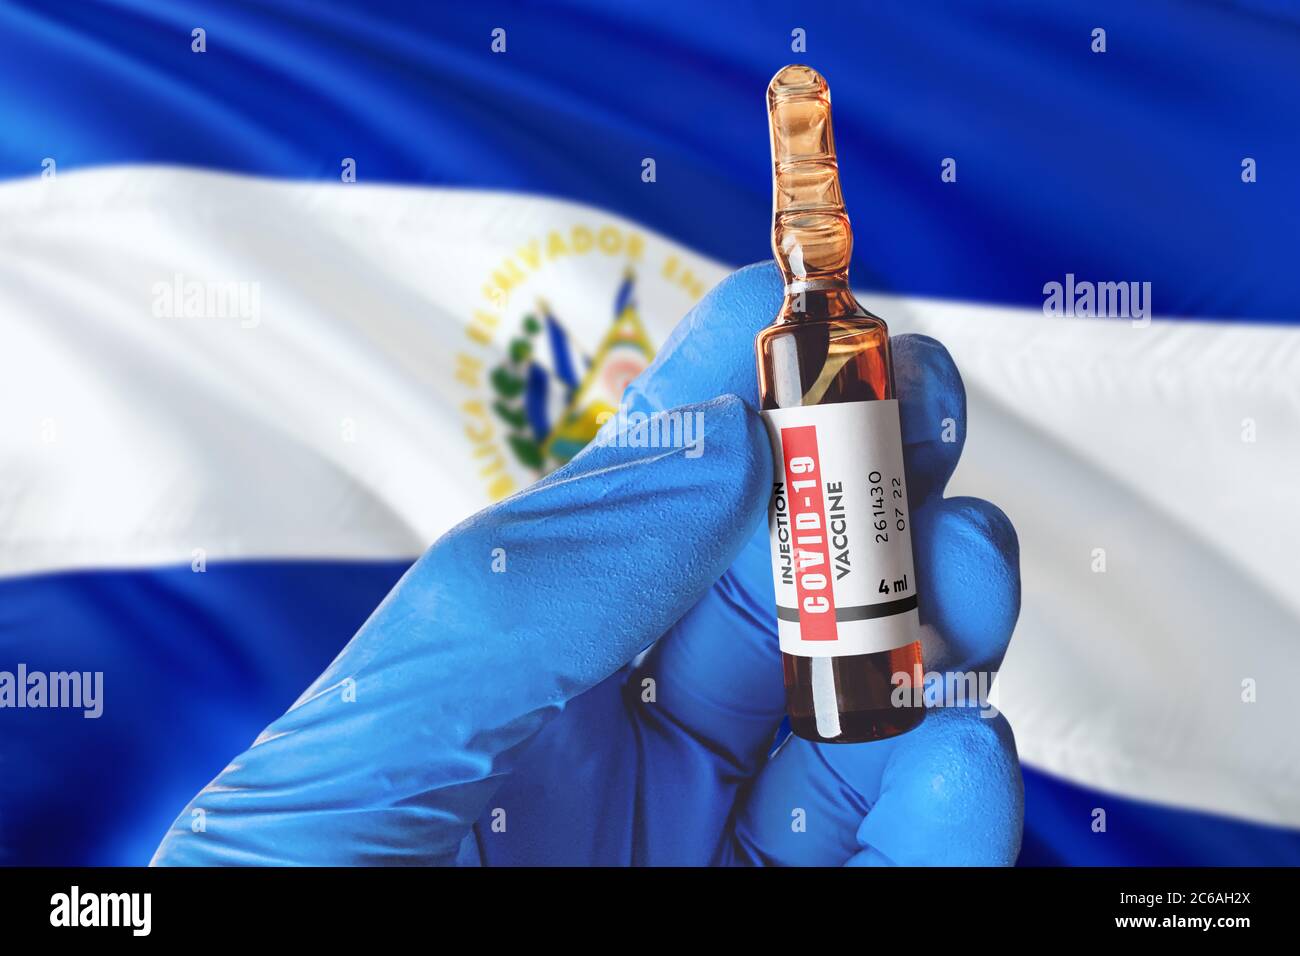 El Salvador Flagge mit Coronavirus Covid-19 Konzept. Arzt mit blauen Schutz medizinische Handschuhe hält eine Impfstoffflasche. Coronavirus covid 19 Impfstoff re Stockfoto